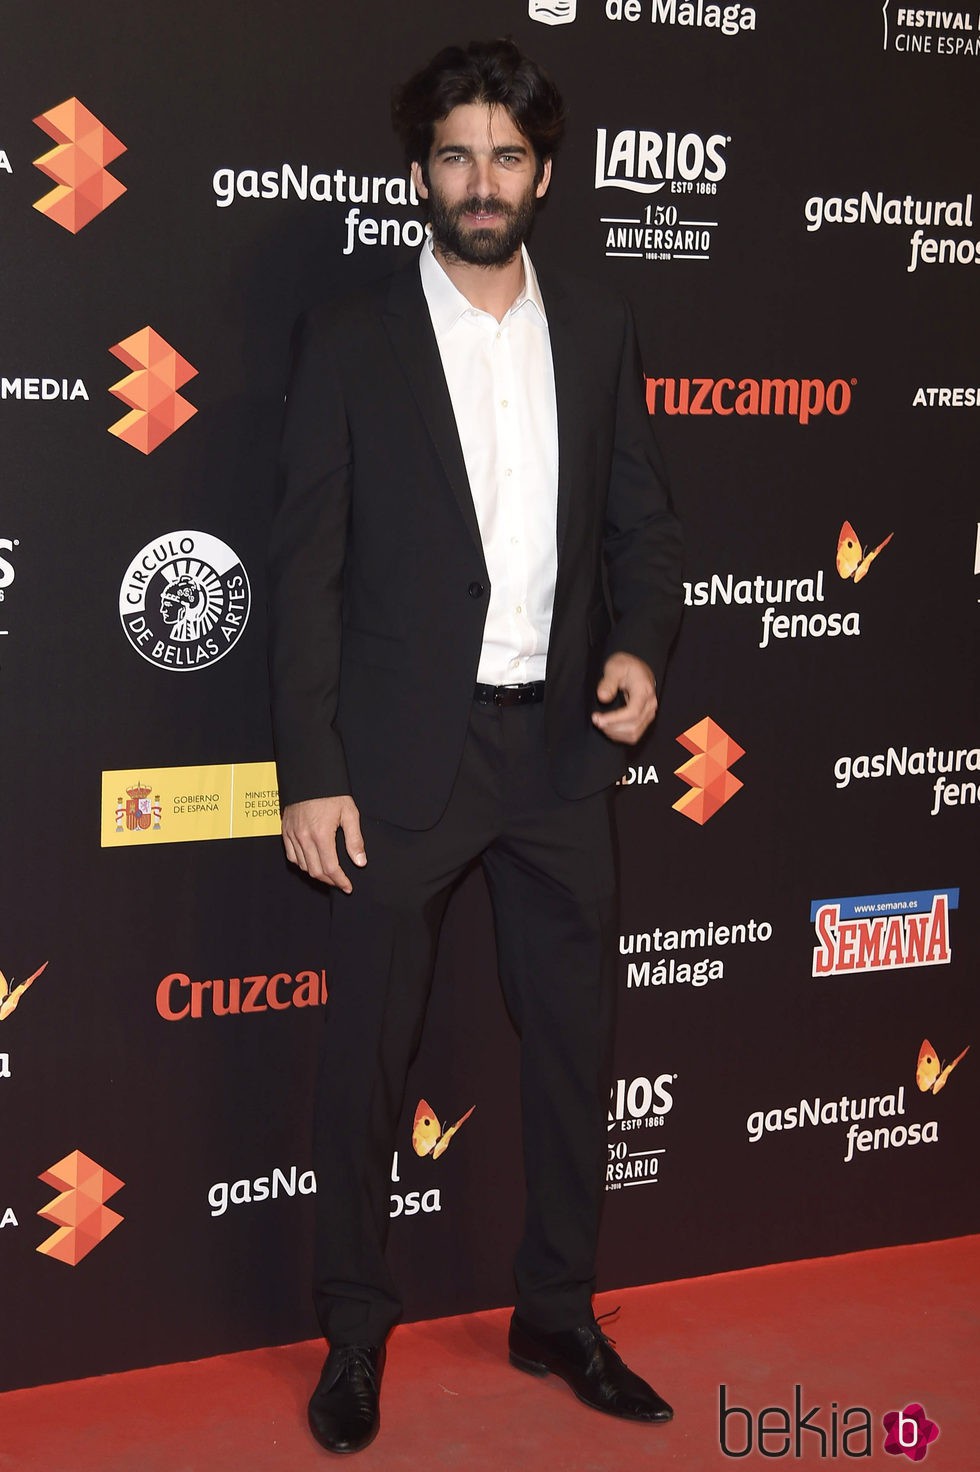 Rubén Cortada en la presentación del Festival de Málaga 2016 en Madrid